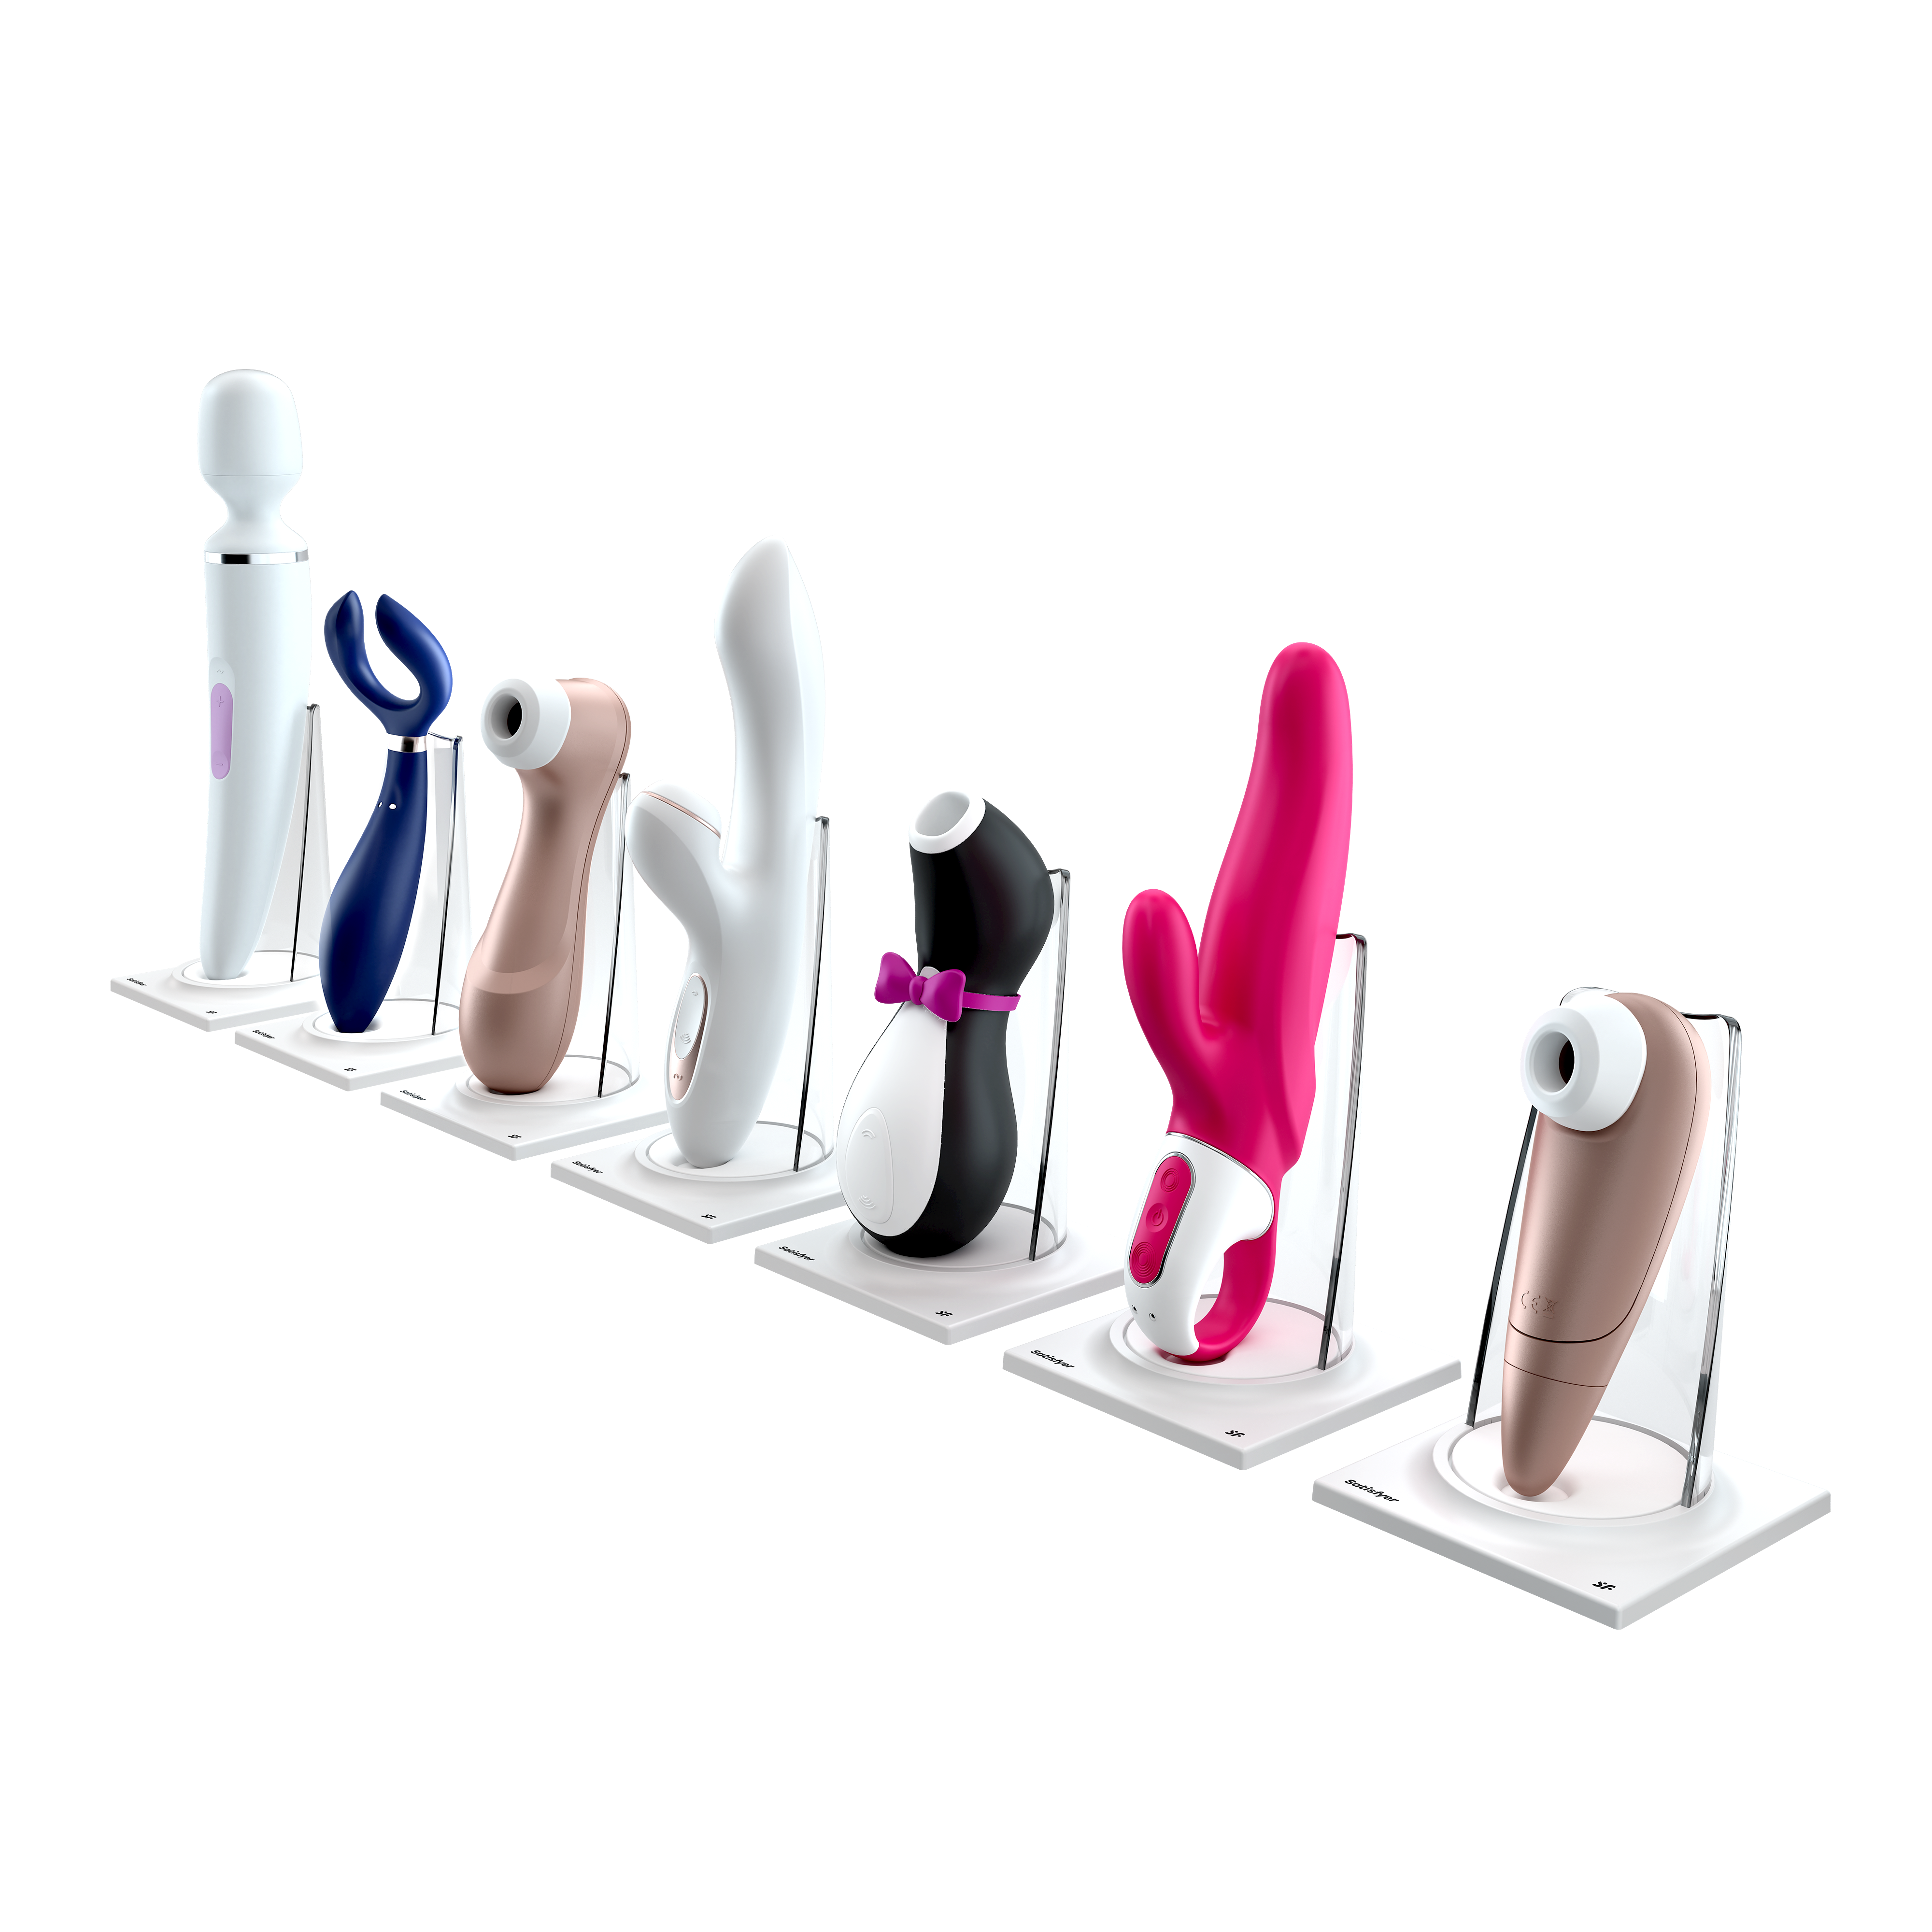 Imagem de diversos brinquedos sexuais da Satisfayer.